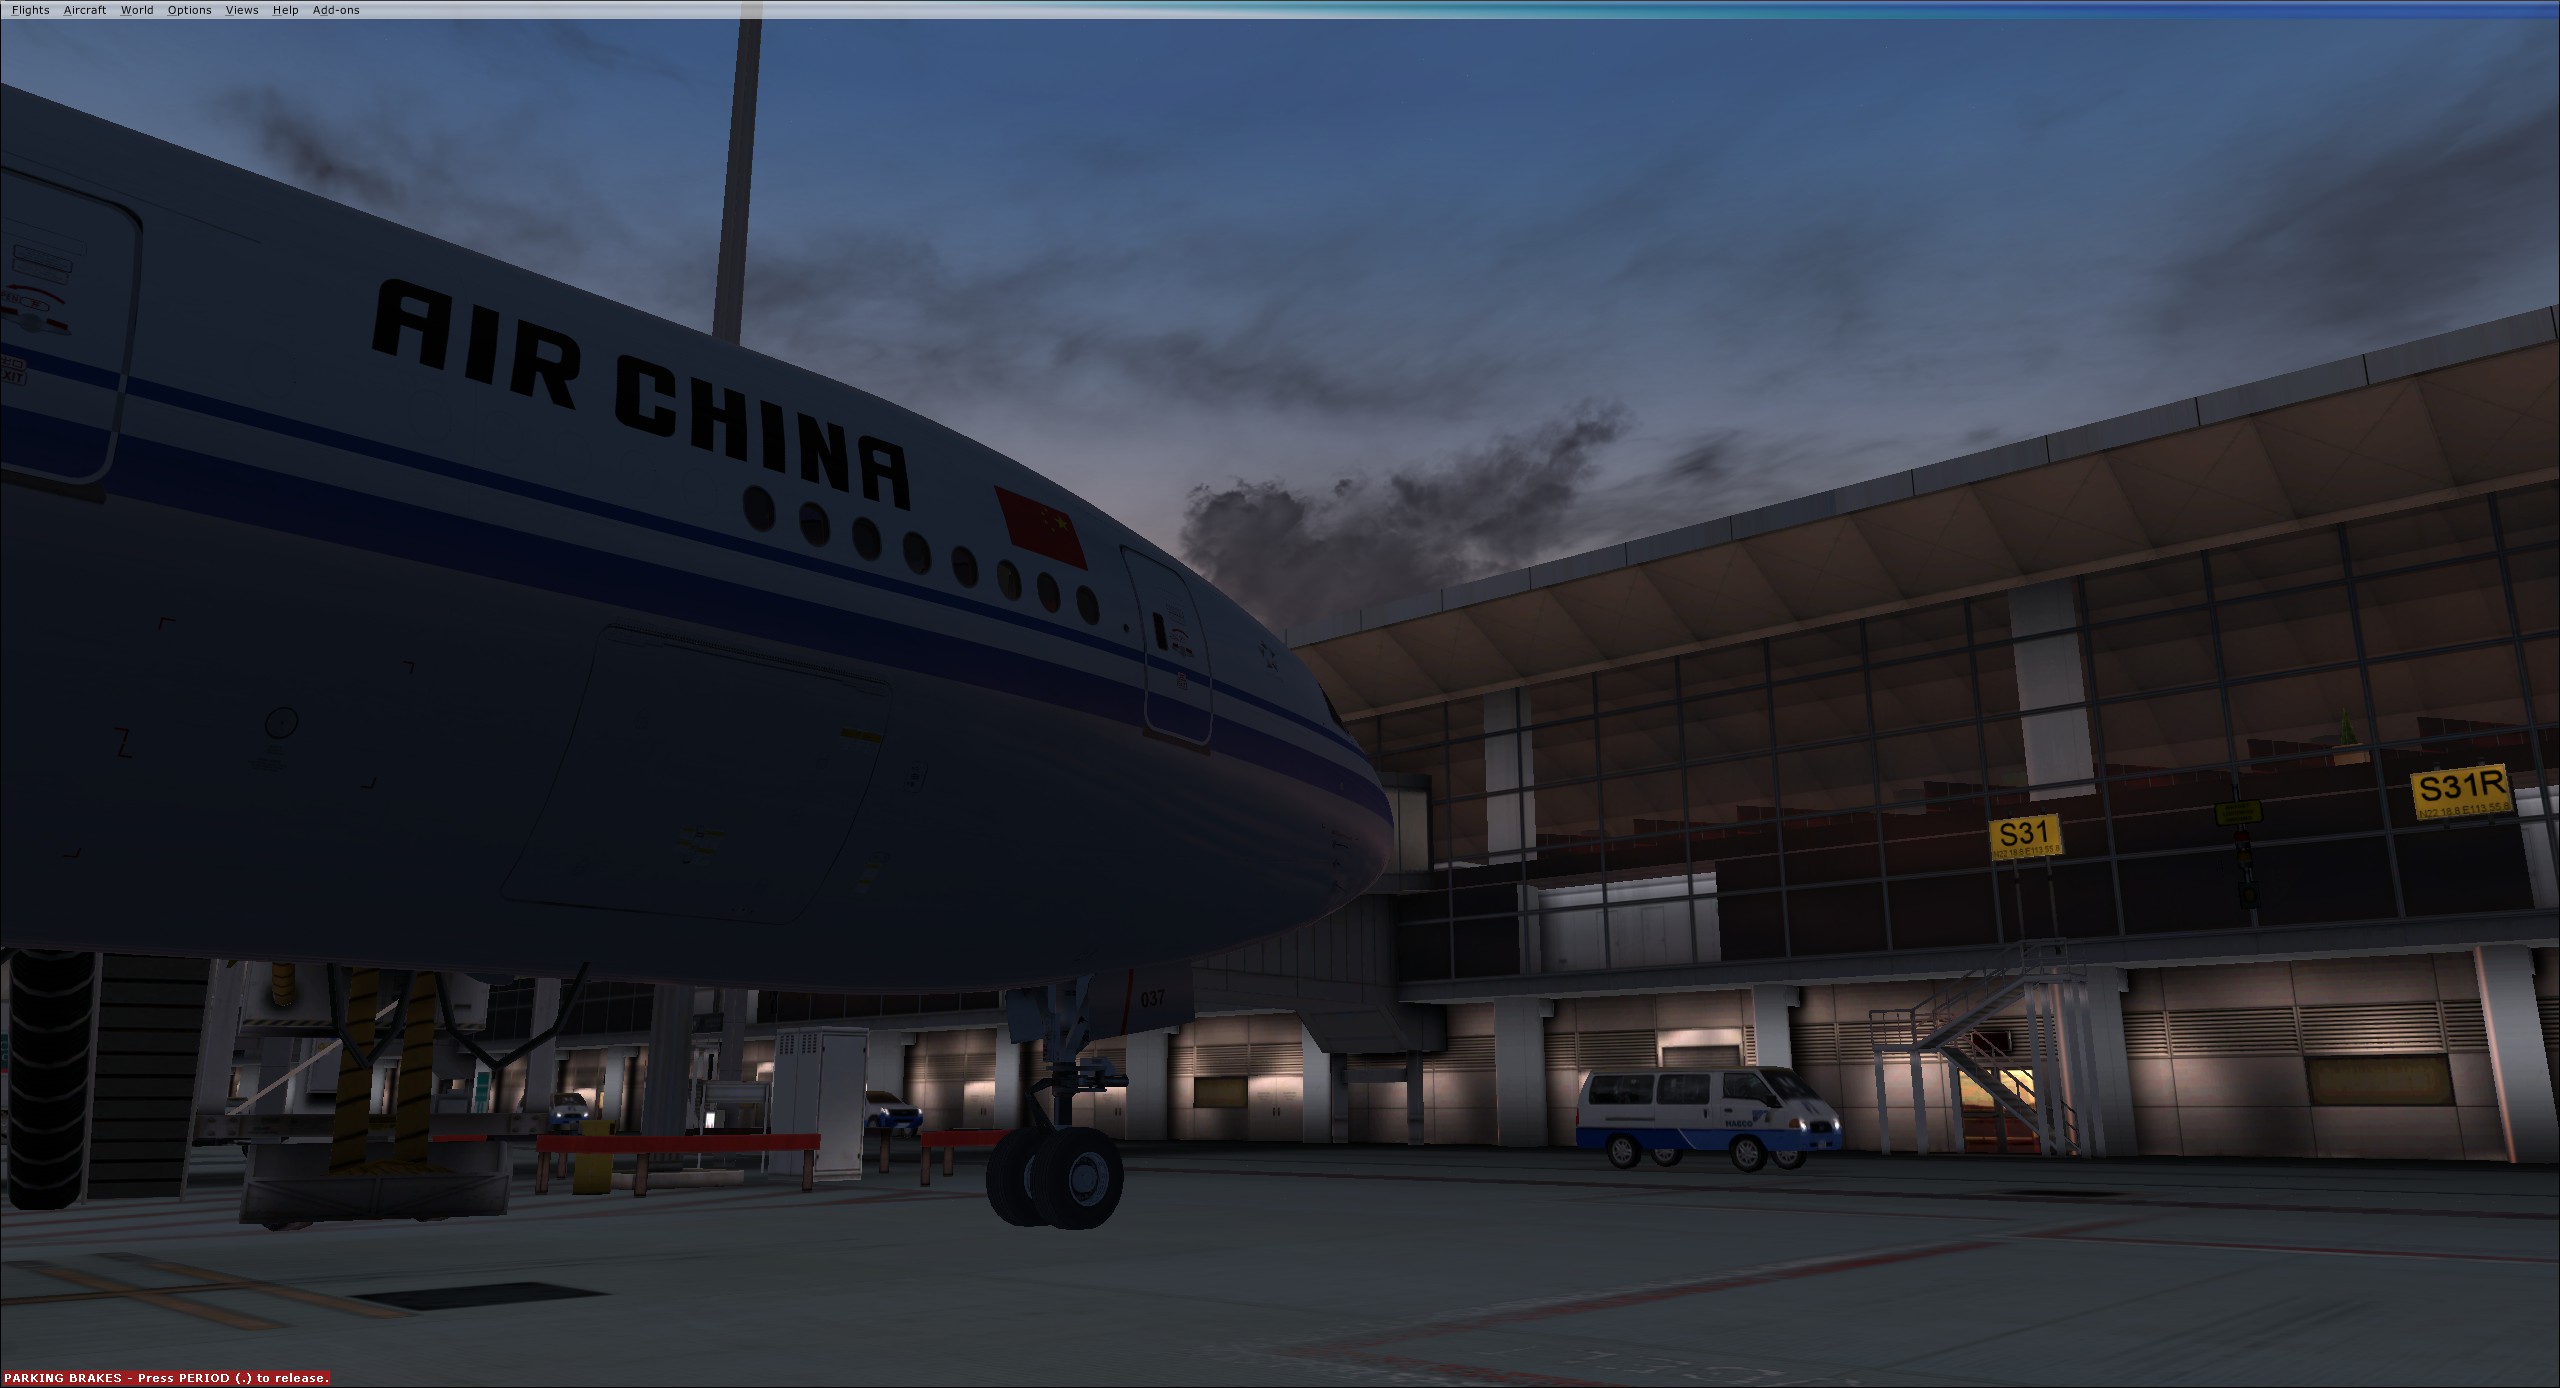 AirChina B77W VHHH-5988 